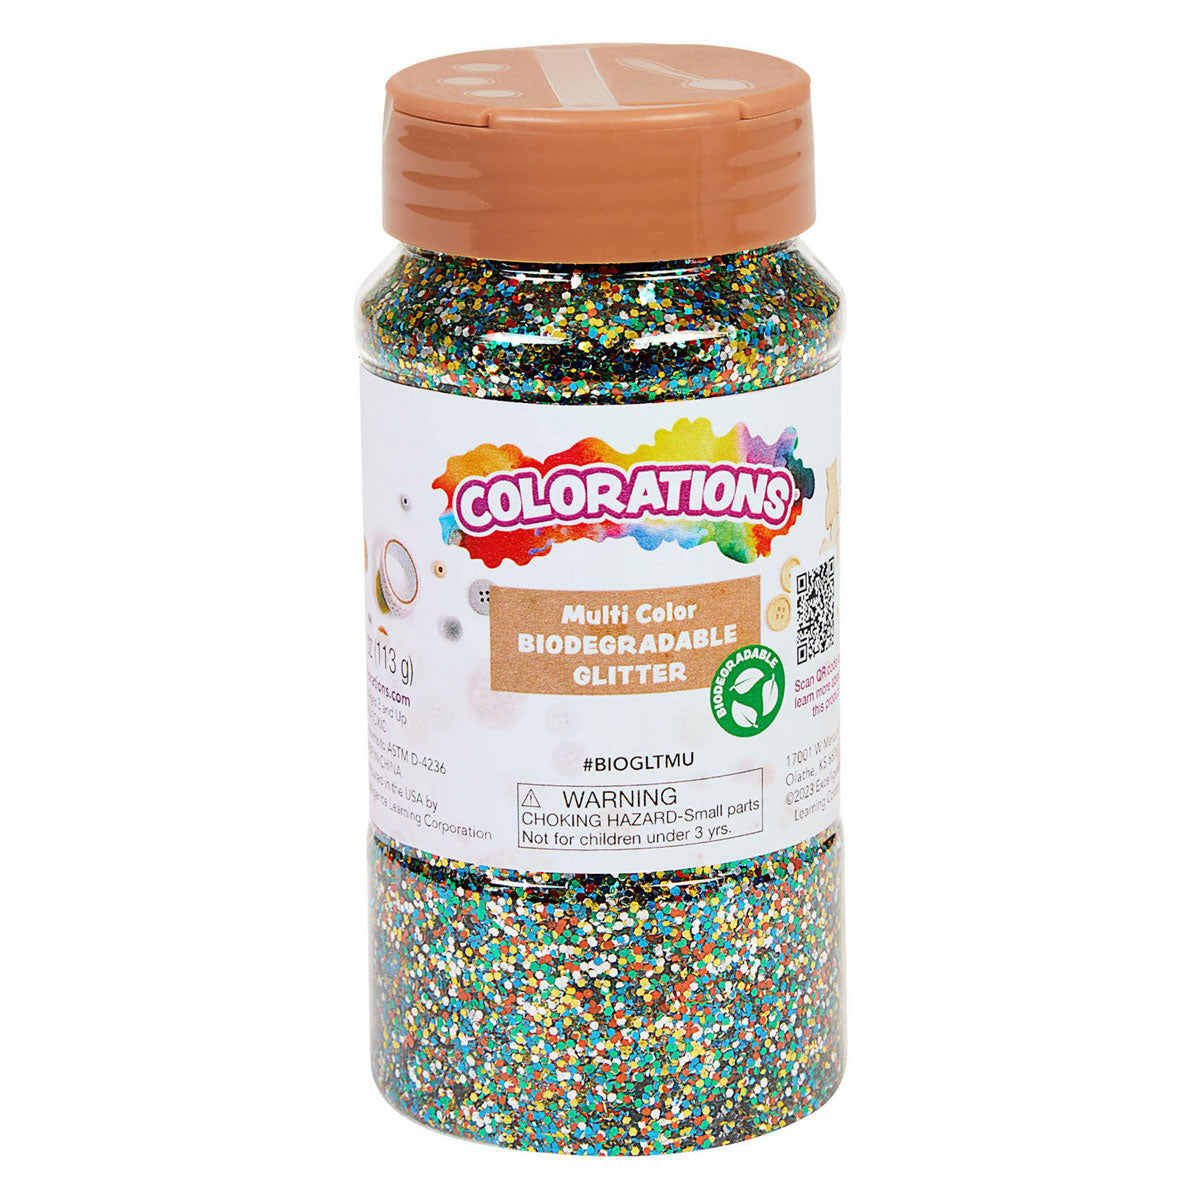 Colorations Biologische Afbreekbare Glitter Multi, 113 gram